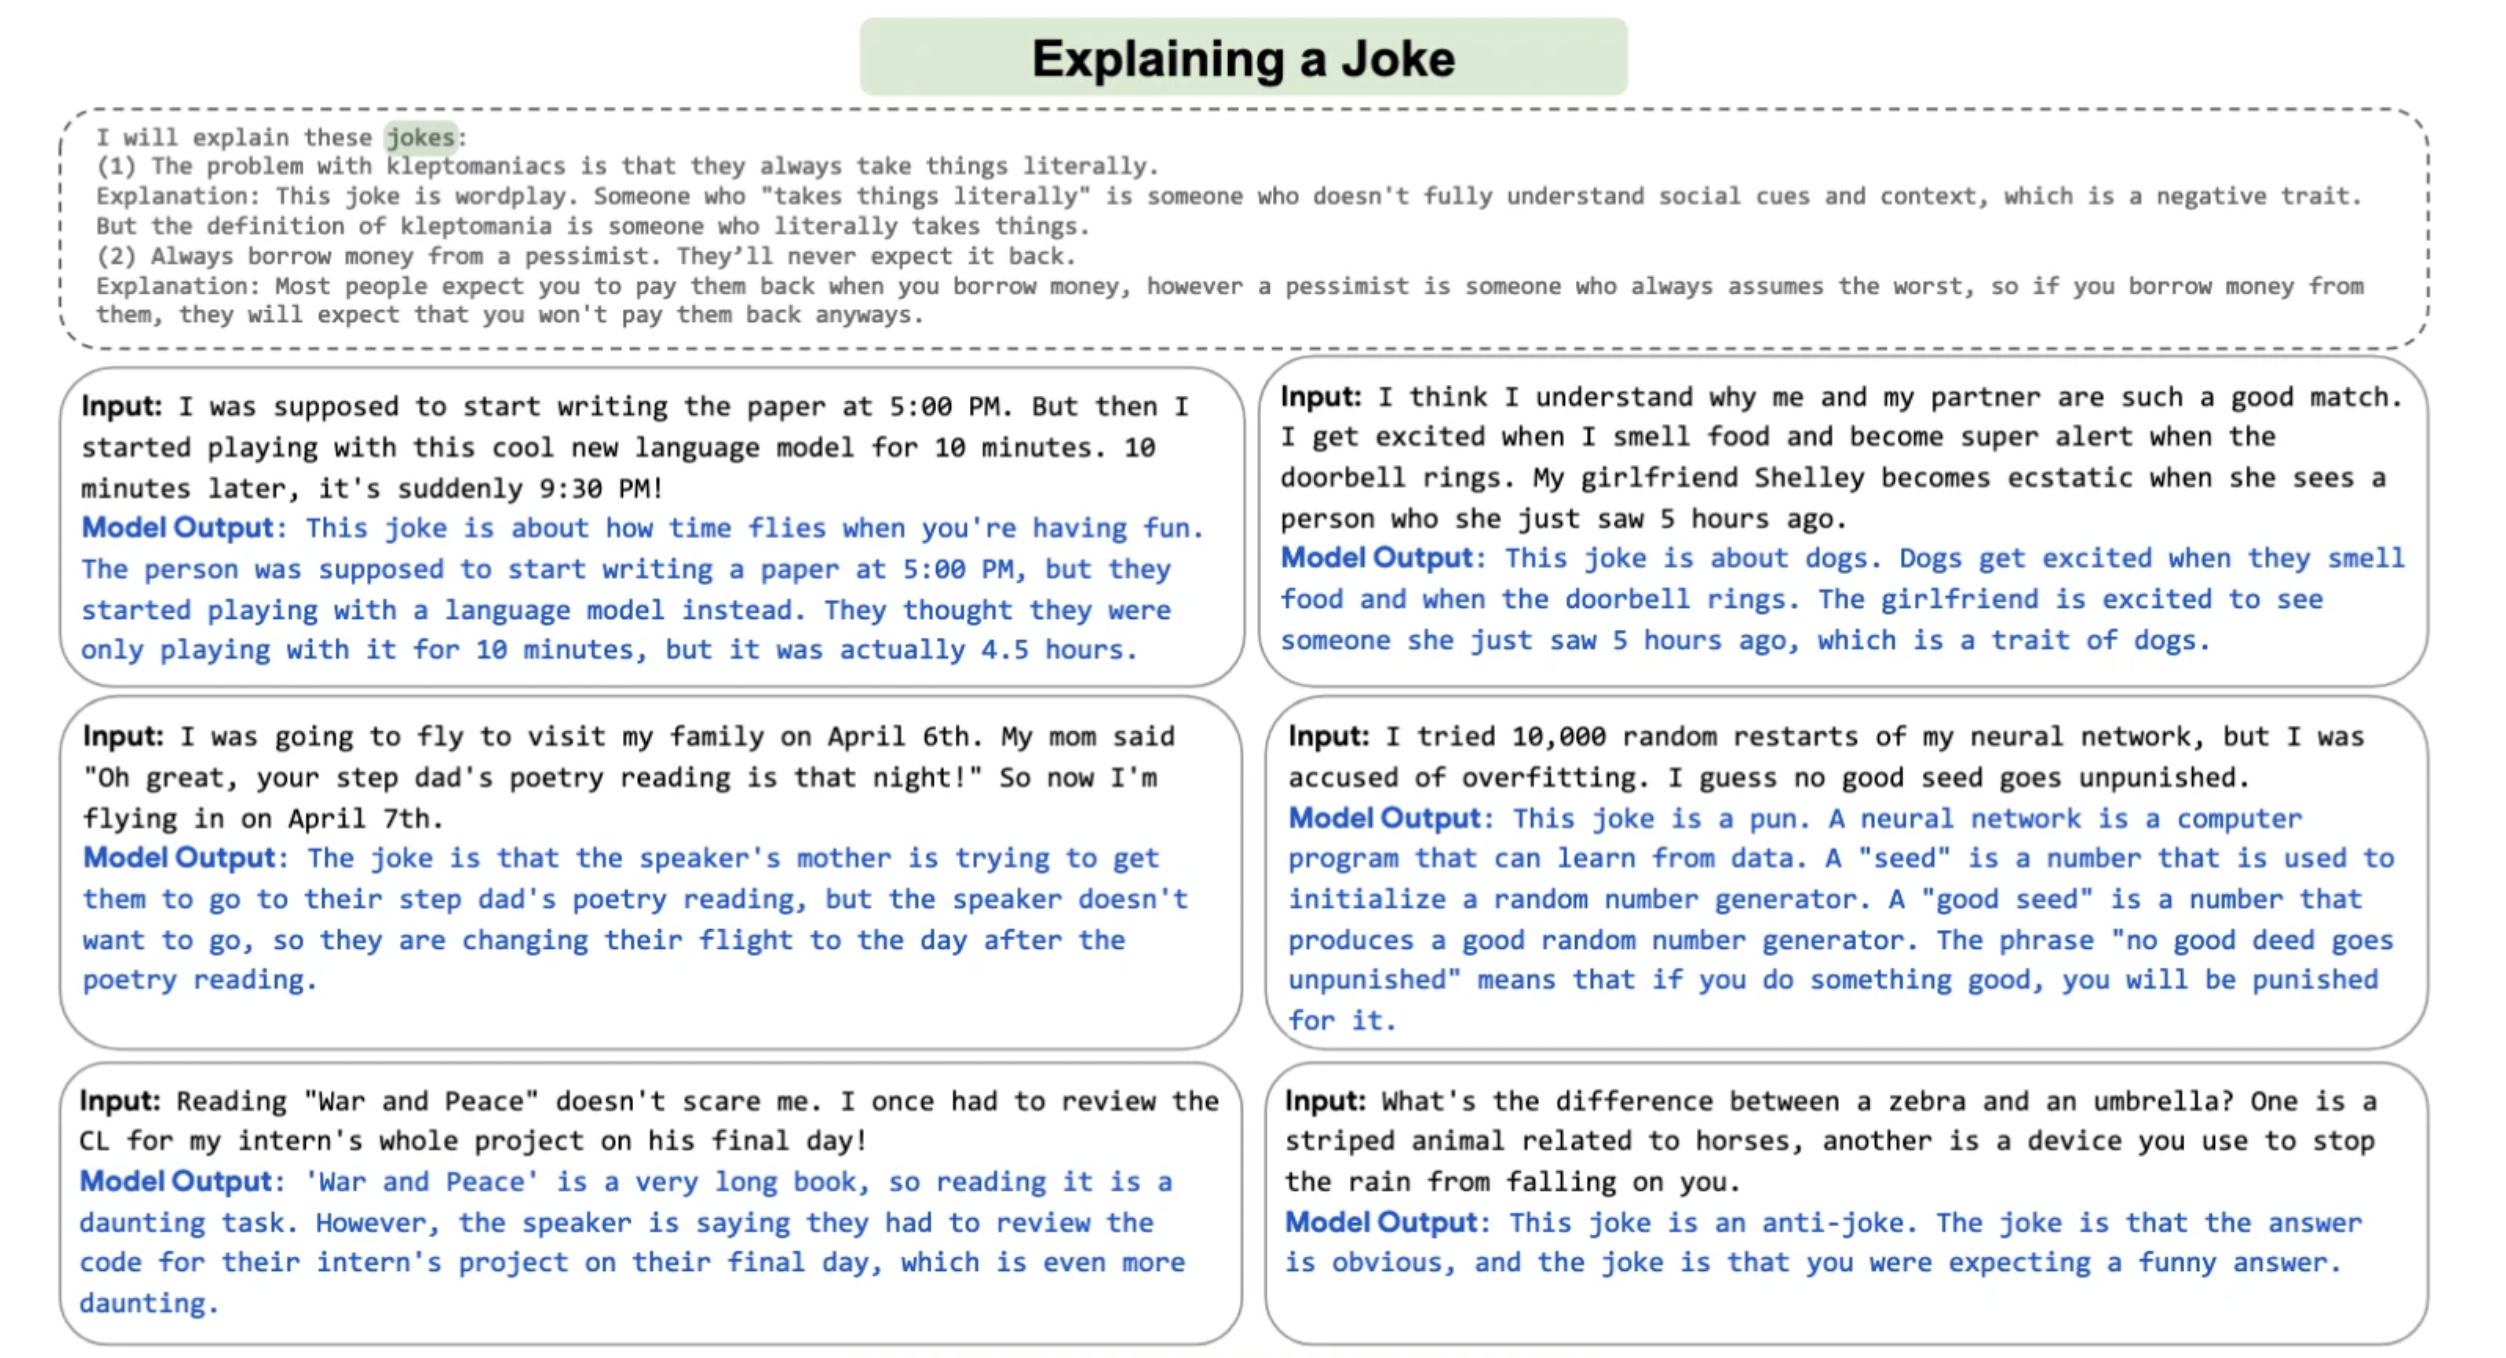 Ejemplos en inglés de chistes y explicaciones que hace la Inteligencia Artificial desarrollada por Google